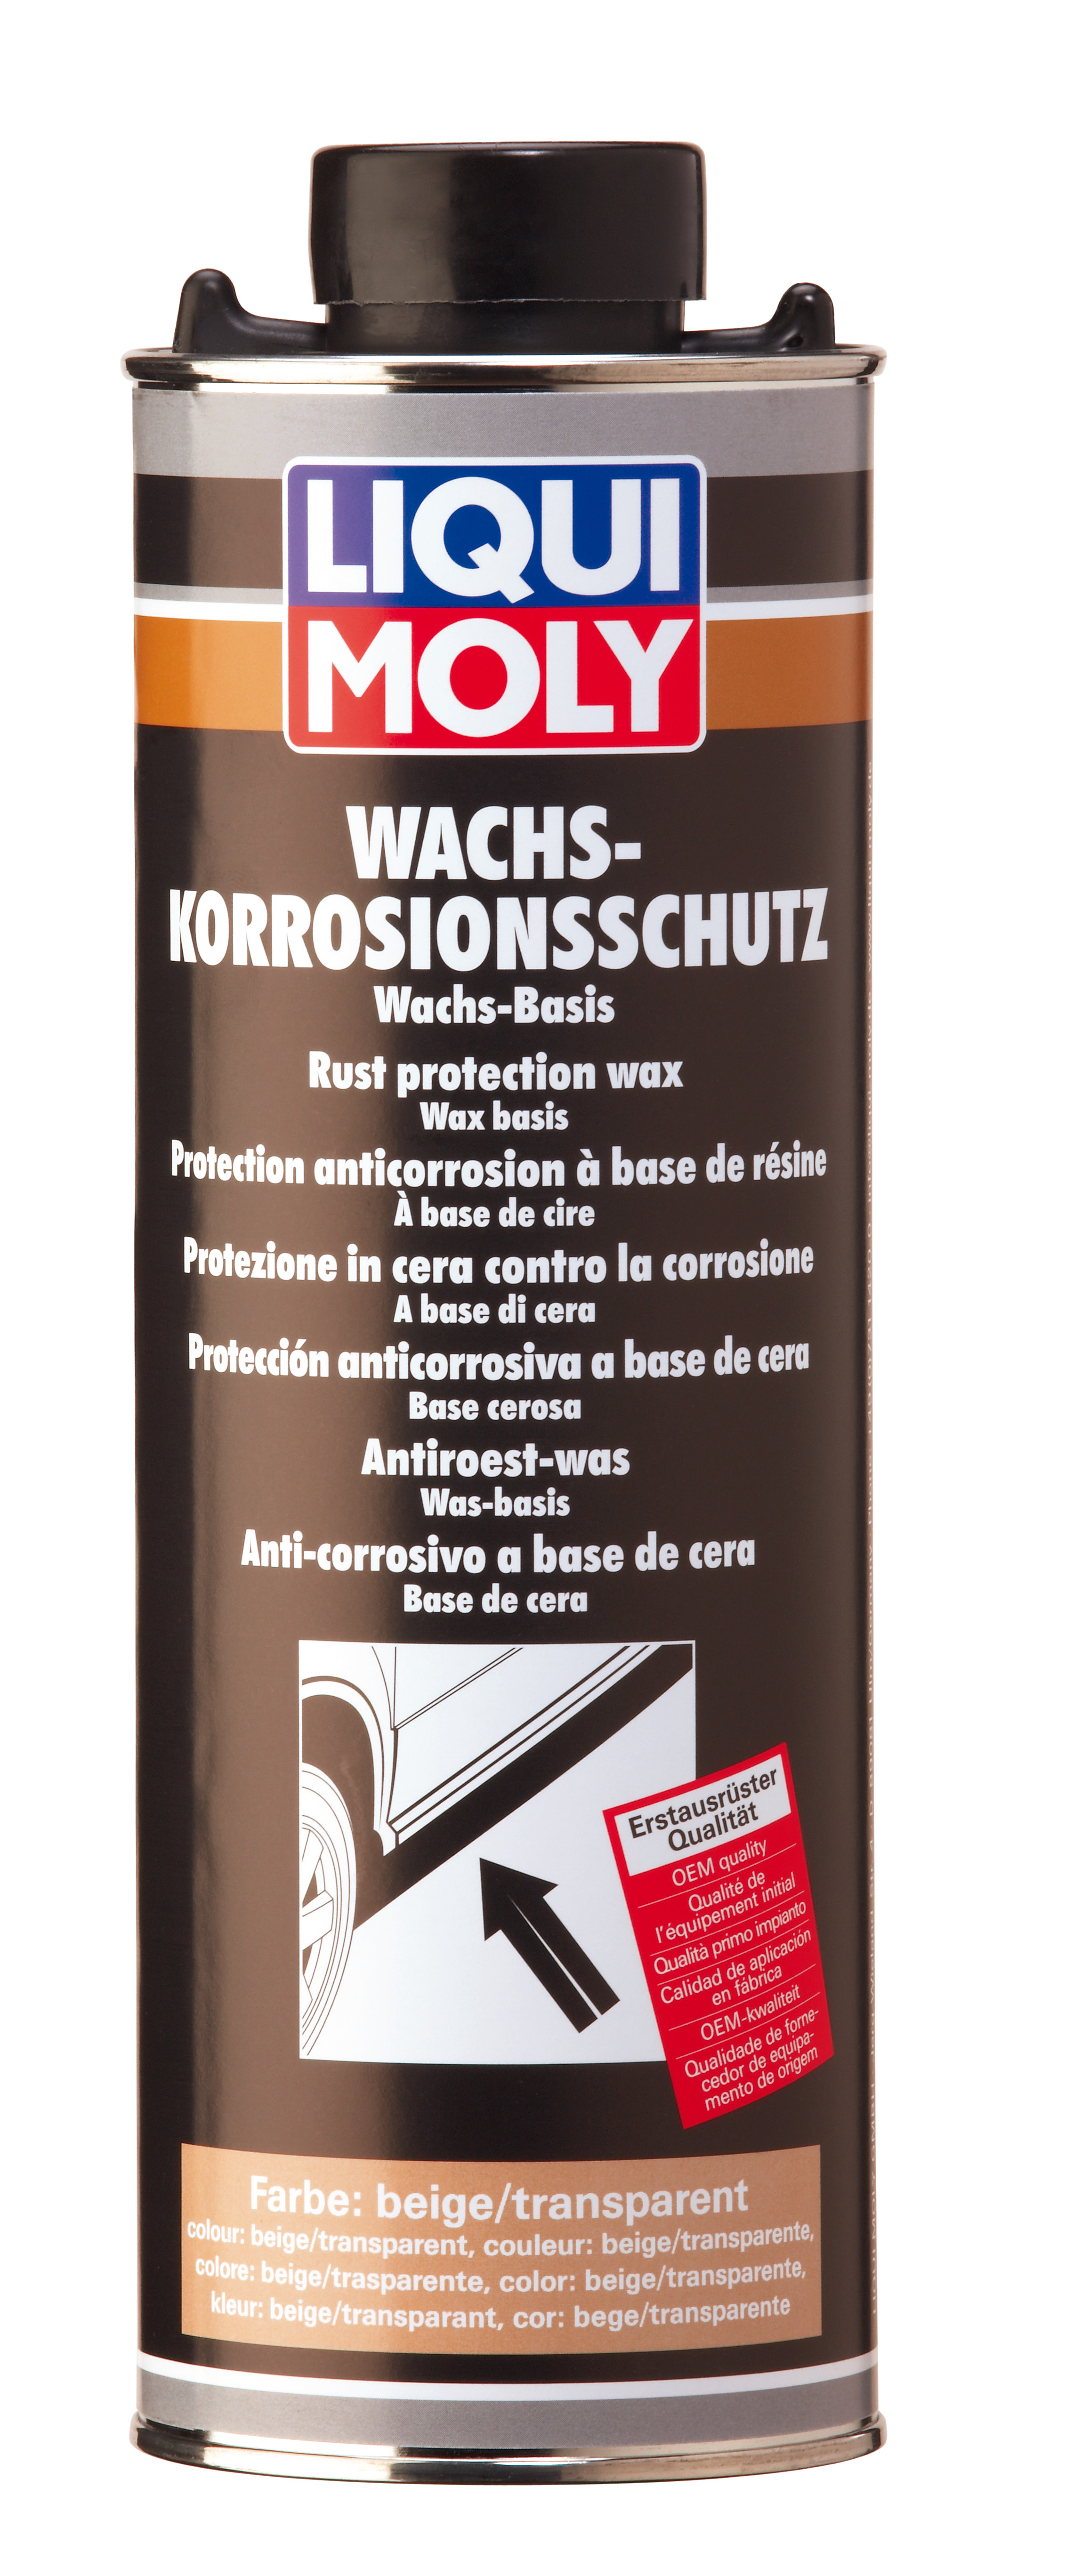 Антикор воск/смола (коричневый/бесцветный) Wachs-Korrosions-Schutz braun/transparent, 1л - Liqui Moly 6104